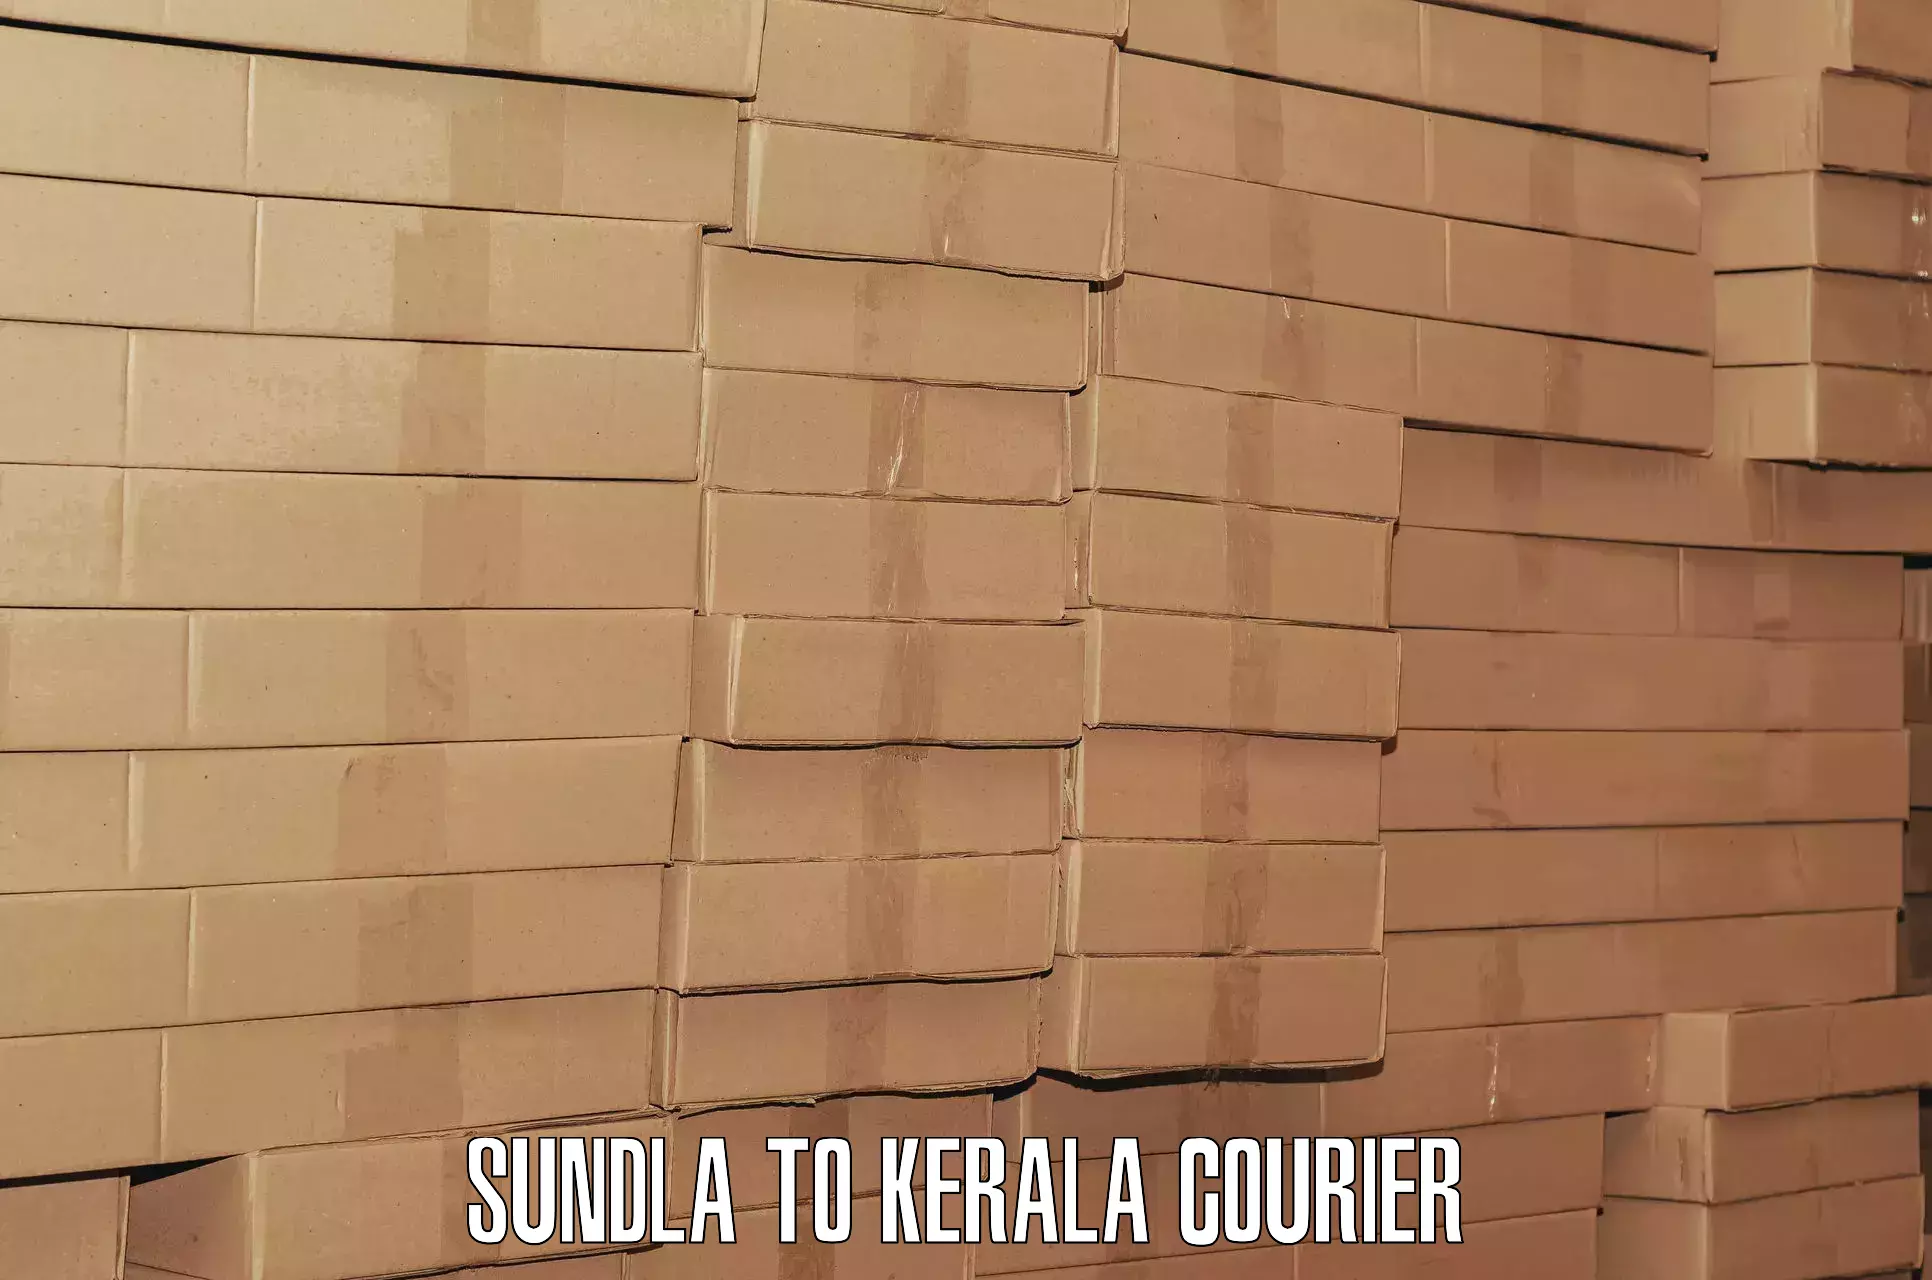 Luggage transport operations Sundla to Kerala